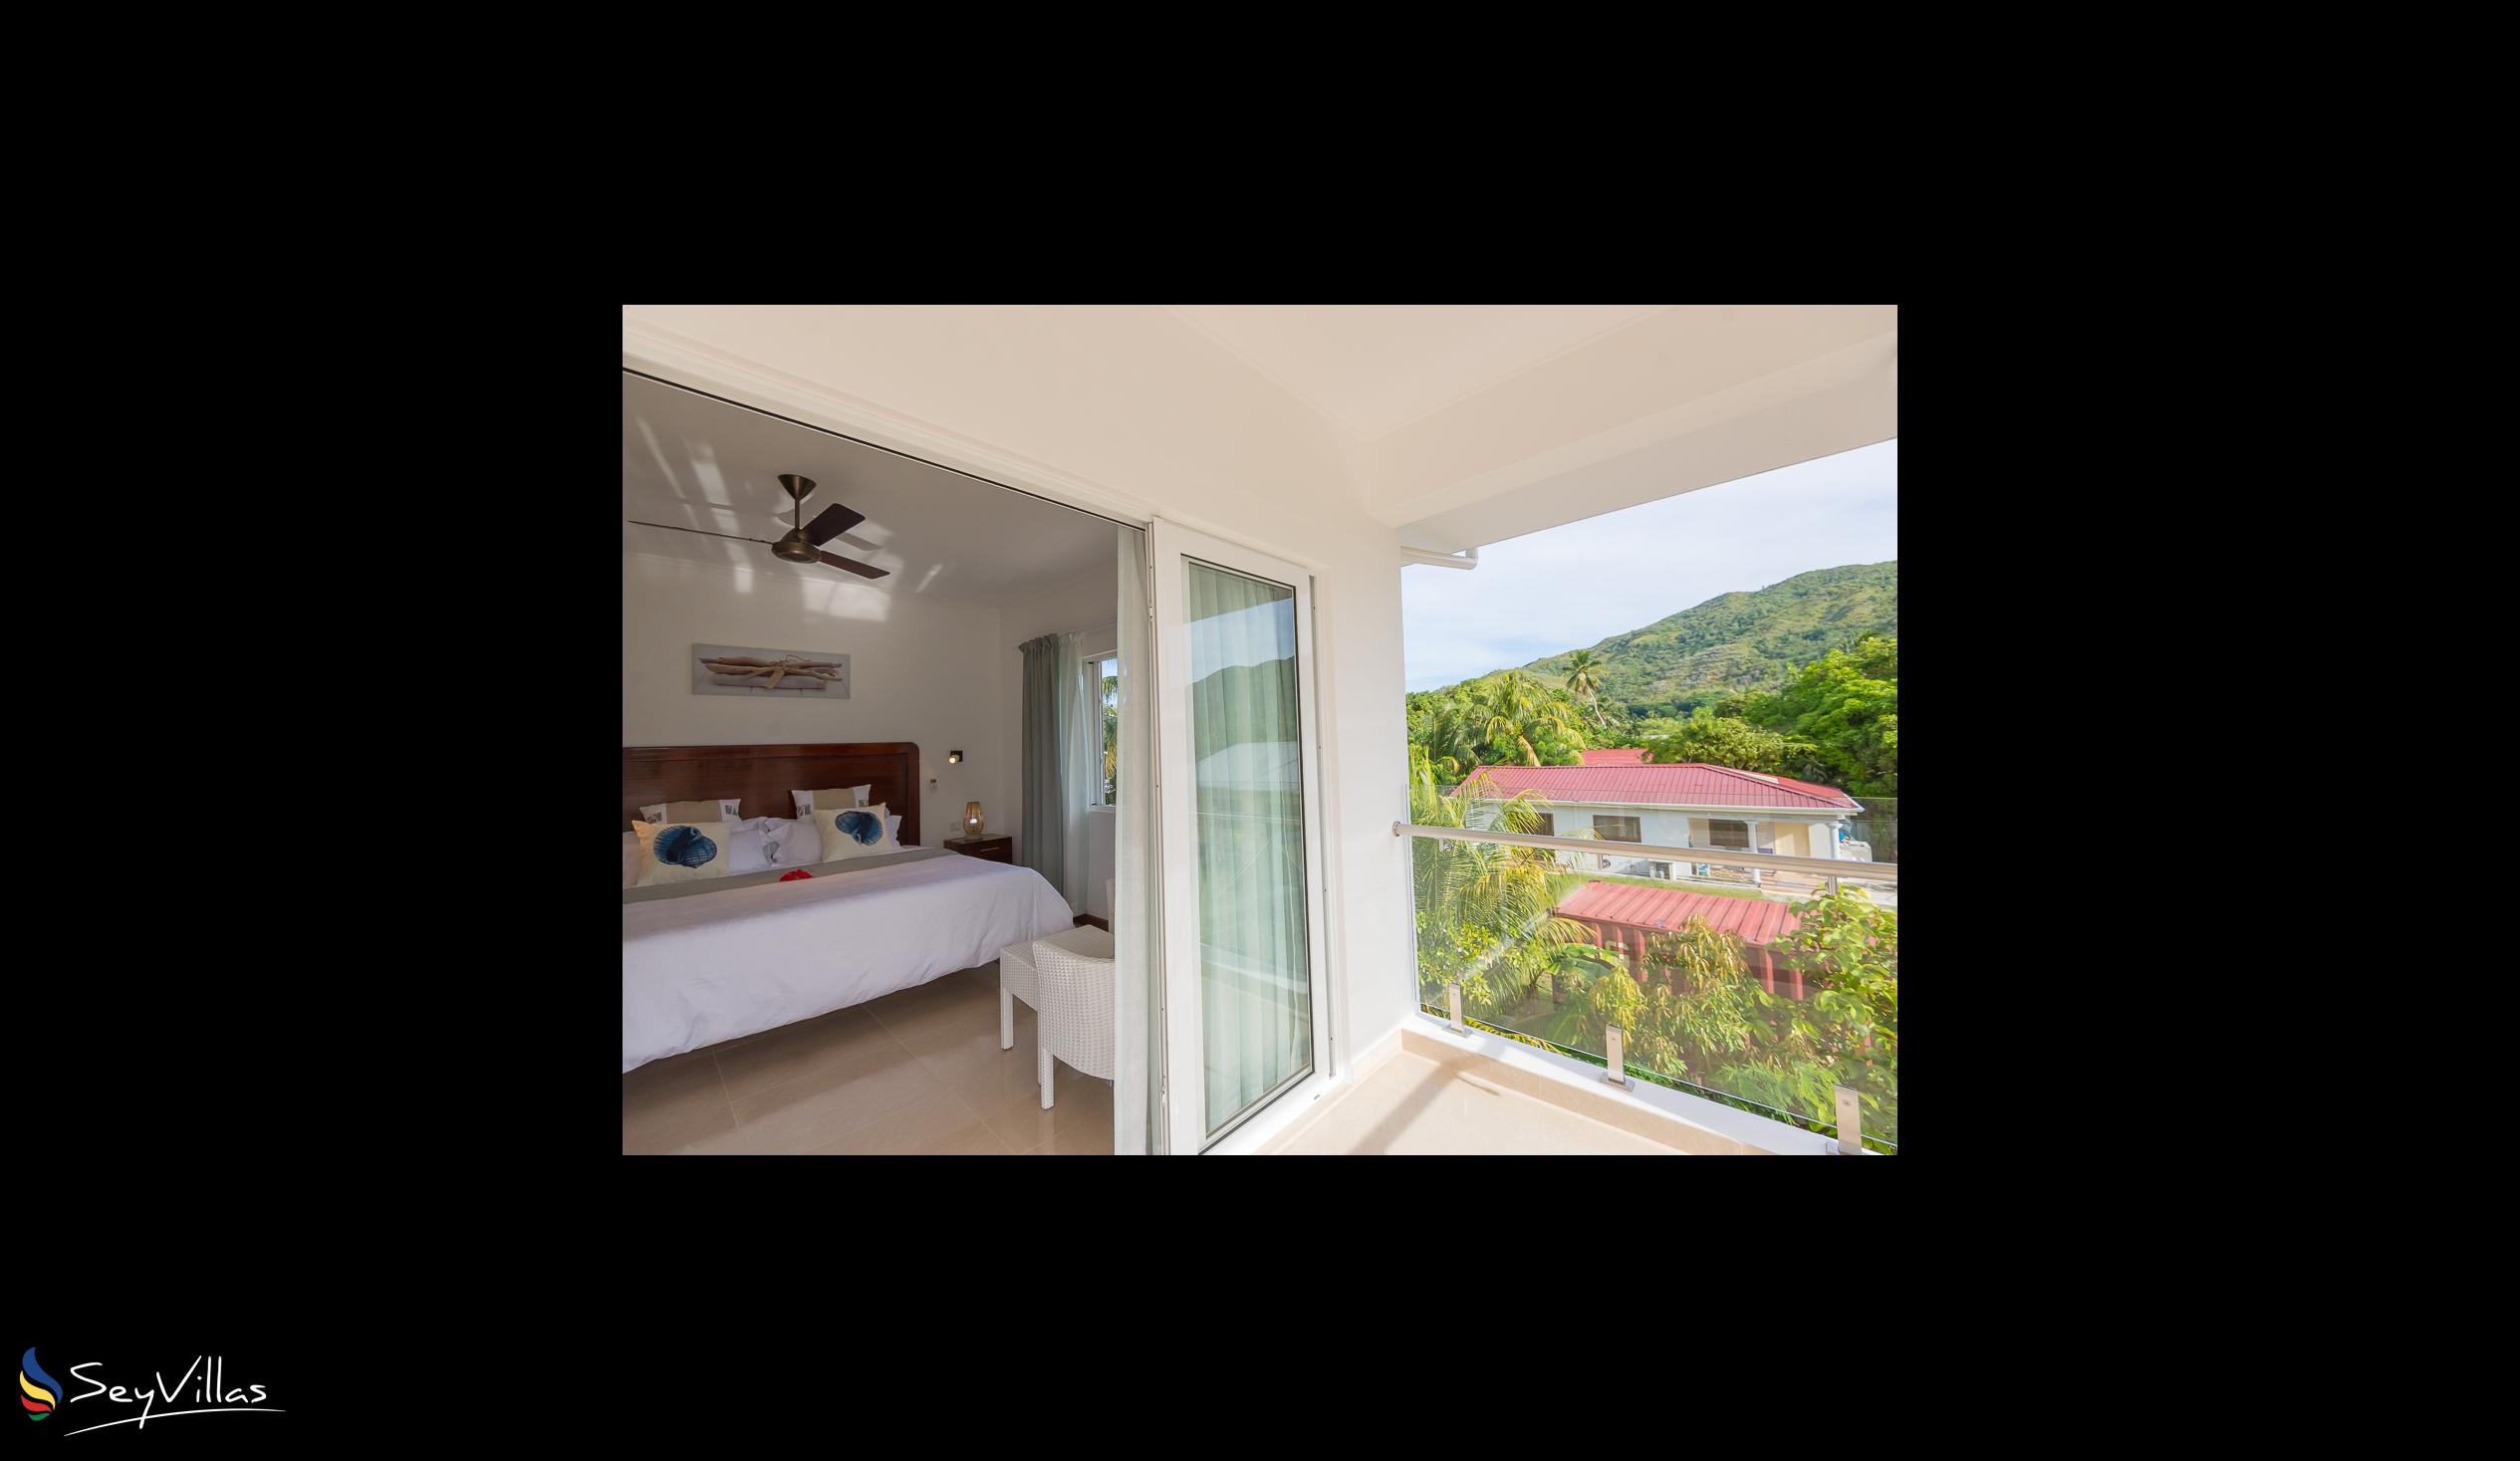 Foto 15: Tropic Villa Annex - Appartement pour adultes - Praslin (Seychelles)